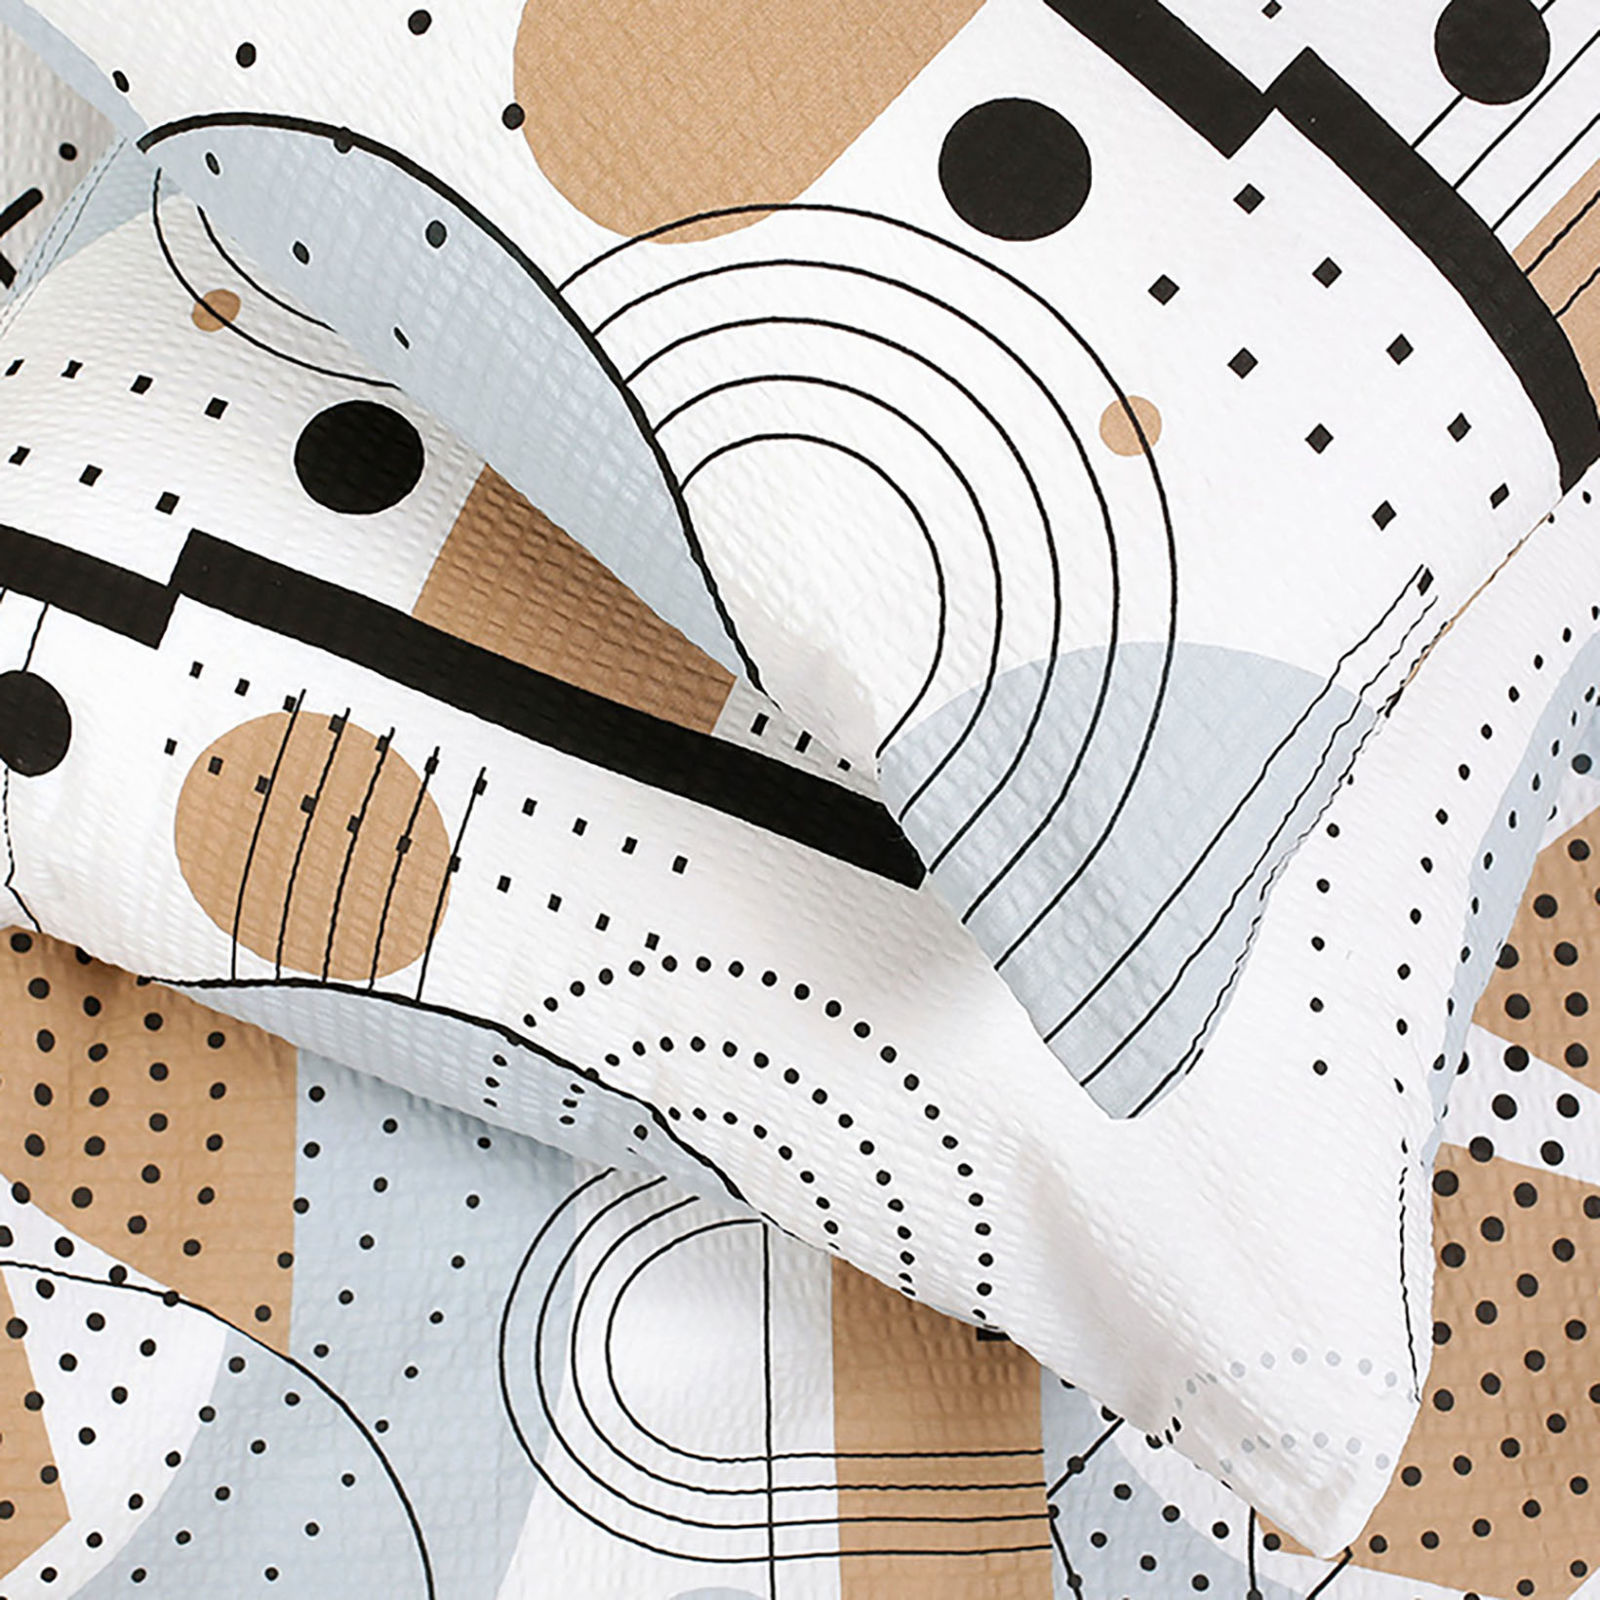 Krepové posteľné obliečky Deluxe - geometrické línie a obrazce